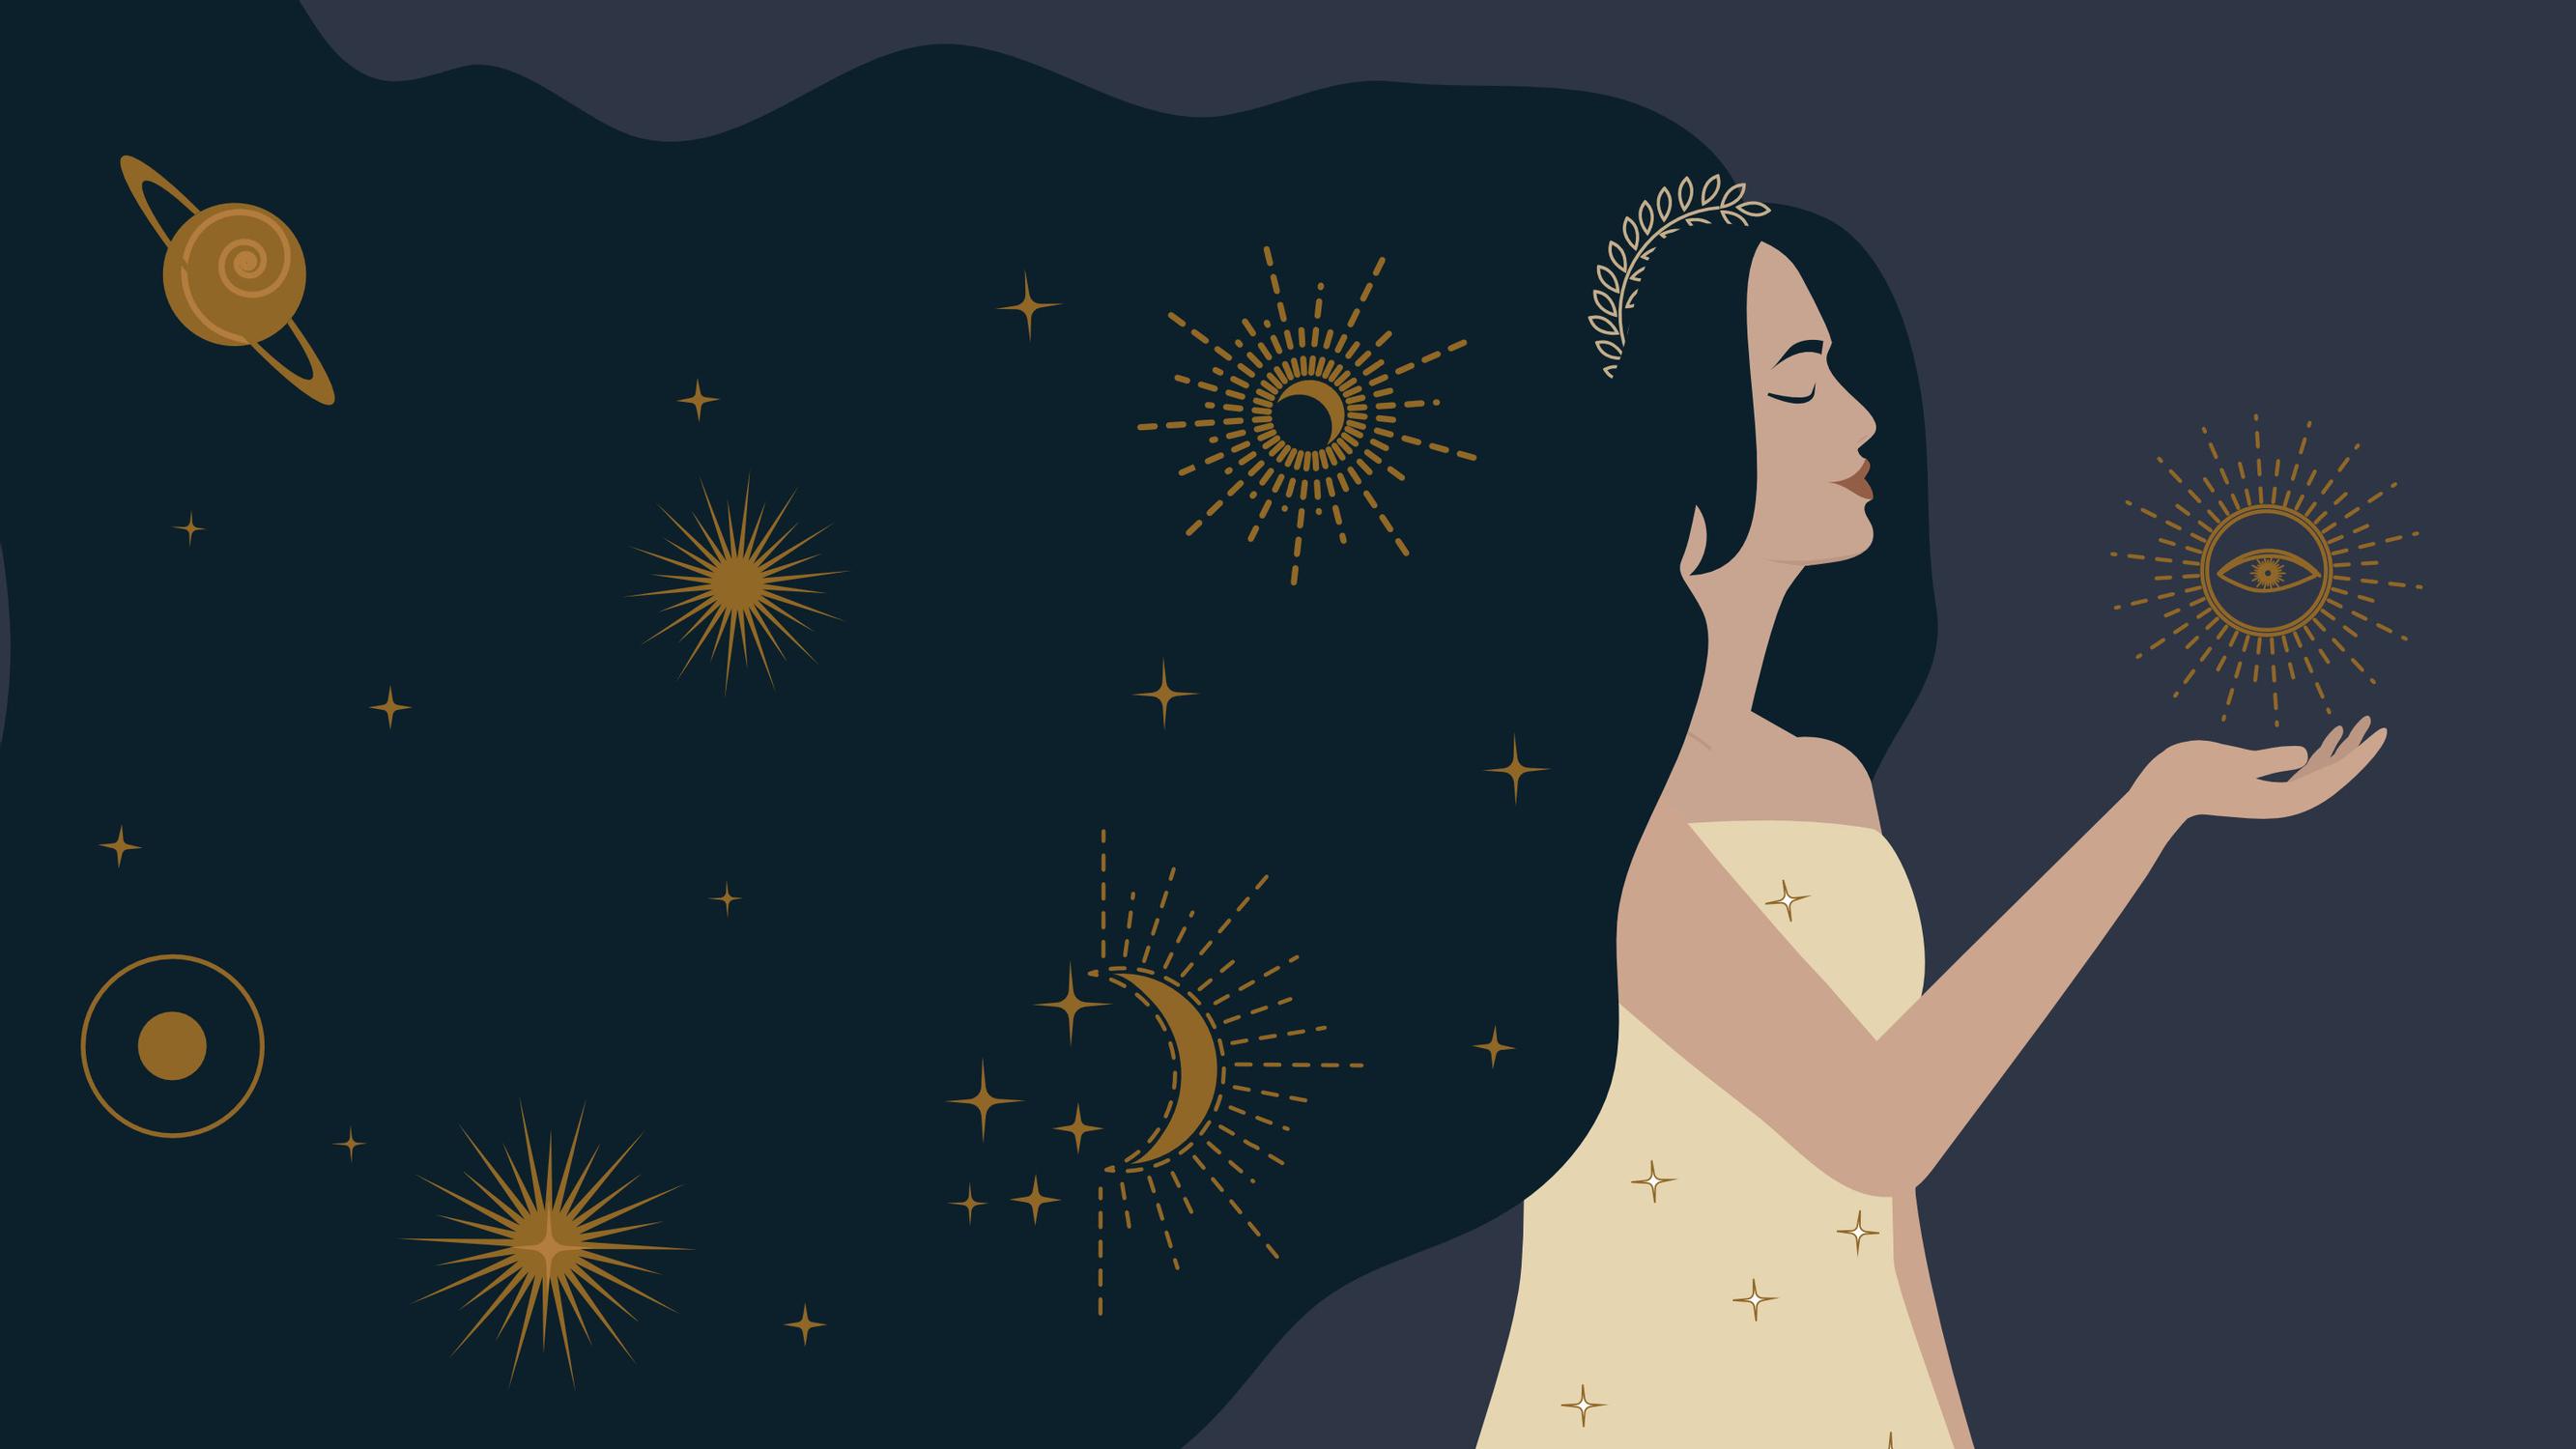 Eevan vuosihoroskooppi 2022: Mitä horoskooppi lupaa sinulle? | Eeva